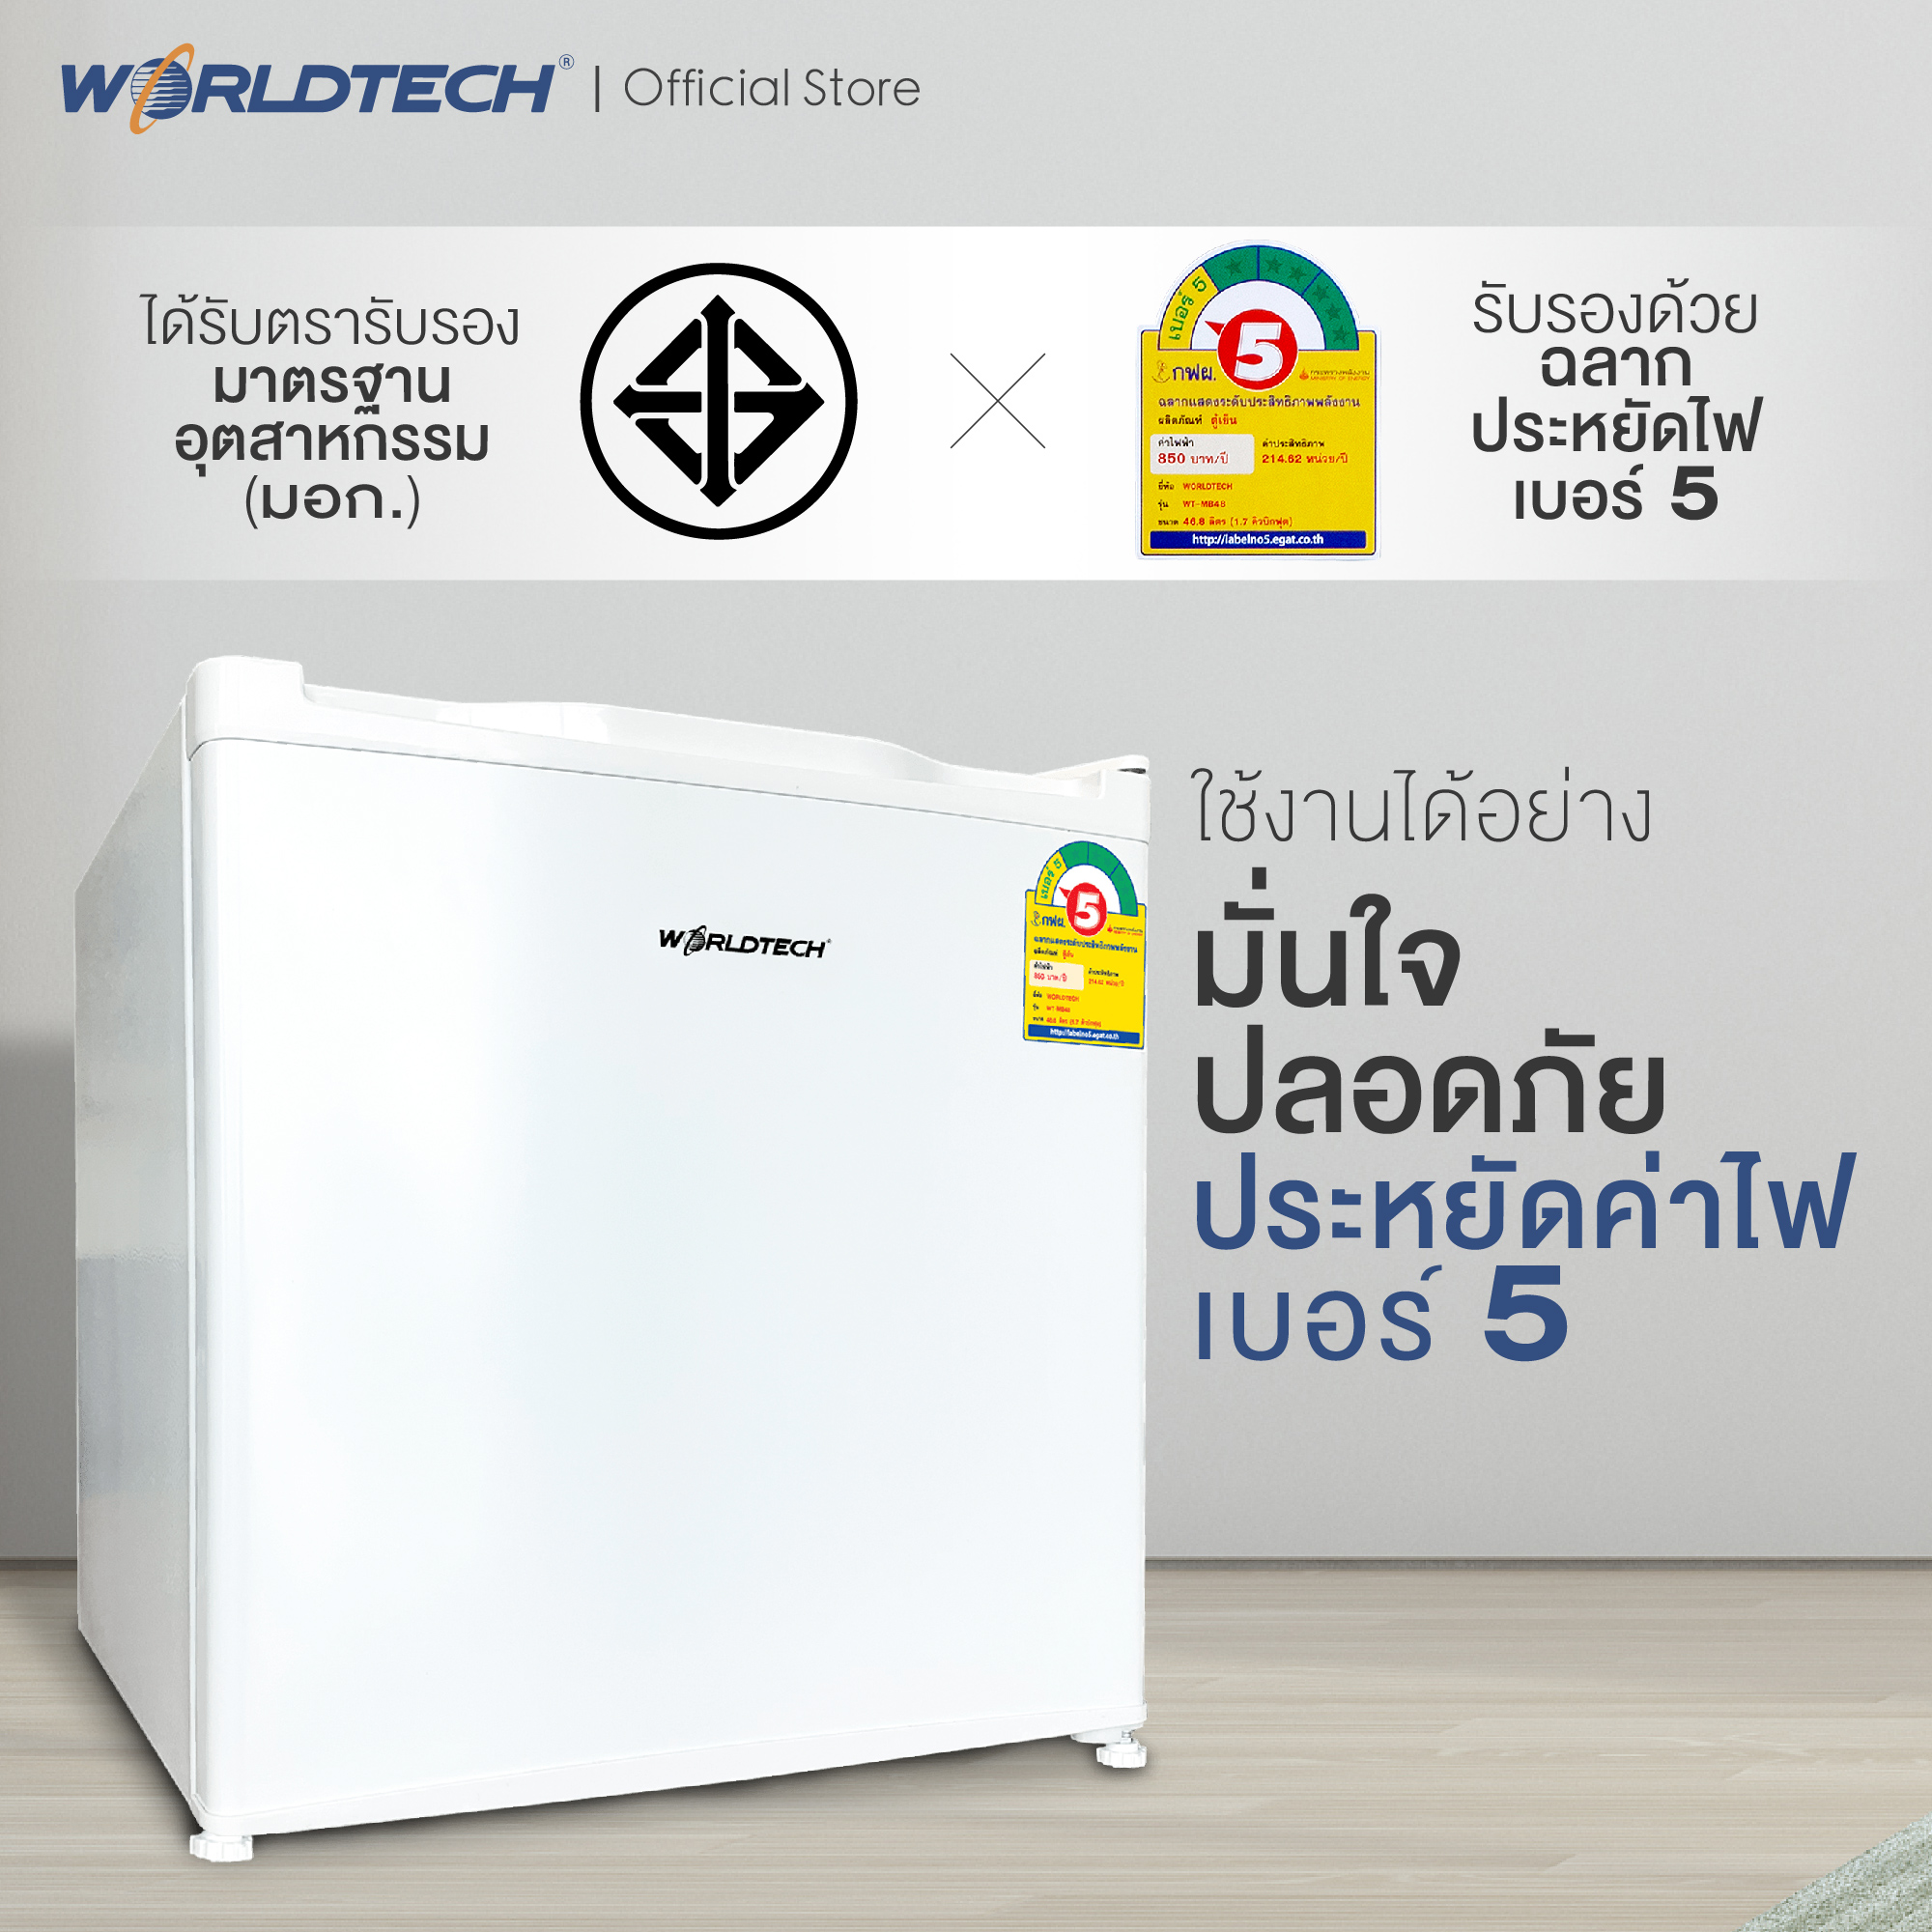 Worldtech ตู้เย็นมินิบาร์ 1.7 คิว  รุ่น WT-MB48 ตู้เย็นขนาดเล็ก ตู้แช่ Mini Bar 46 ลิตร ตู้เย็น 1 ประตู ตู้เย็นทำน้ำแข็งได้ ตู้เย็นราคาถูกๆ ตู้เย็นประหยัดไฟเบอร์ 5 รับประกัน 1 ปี